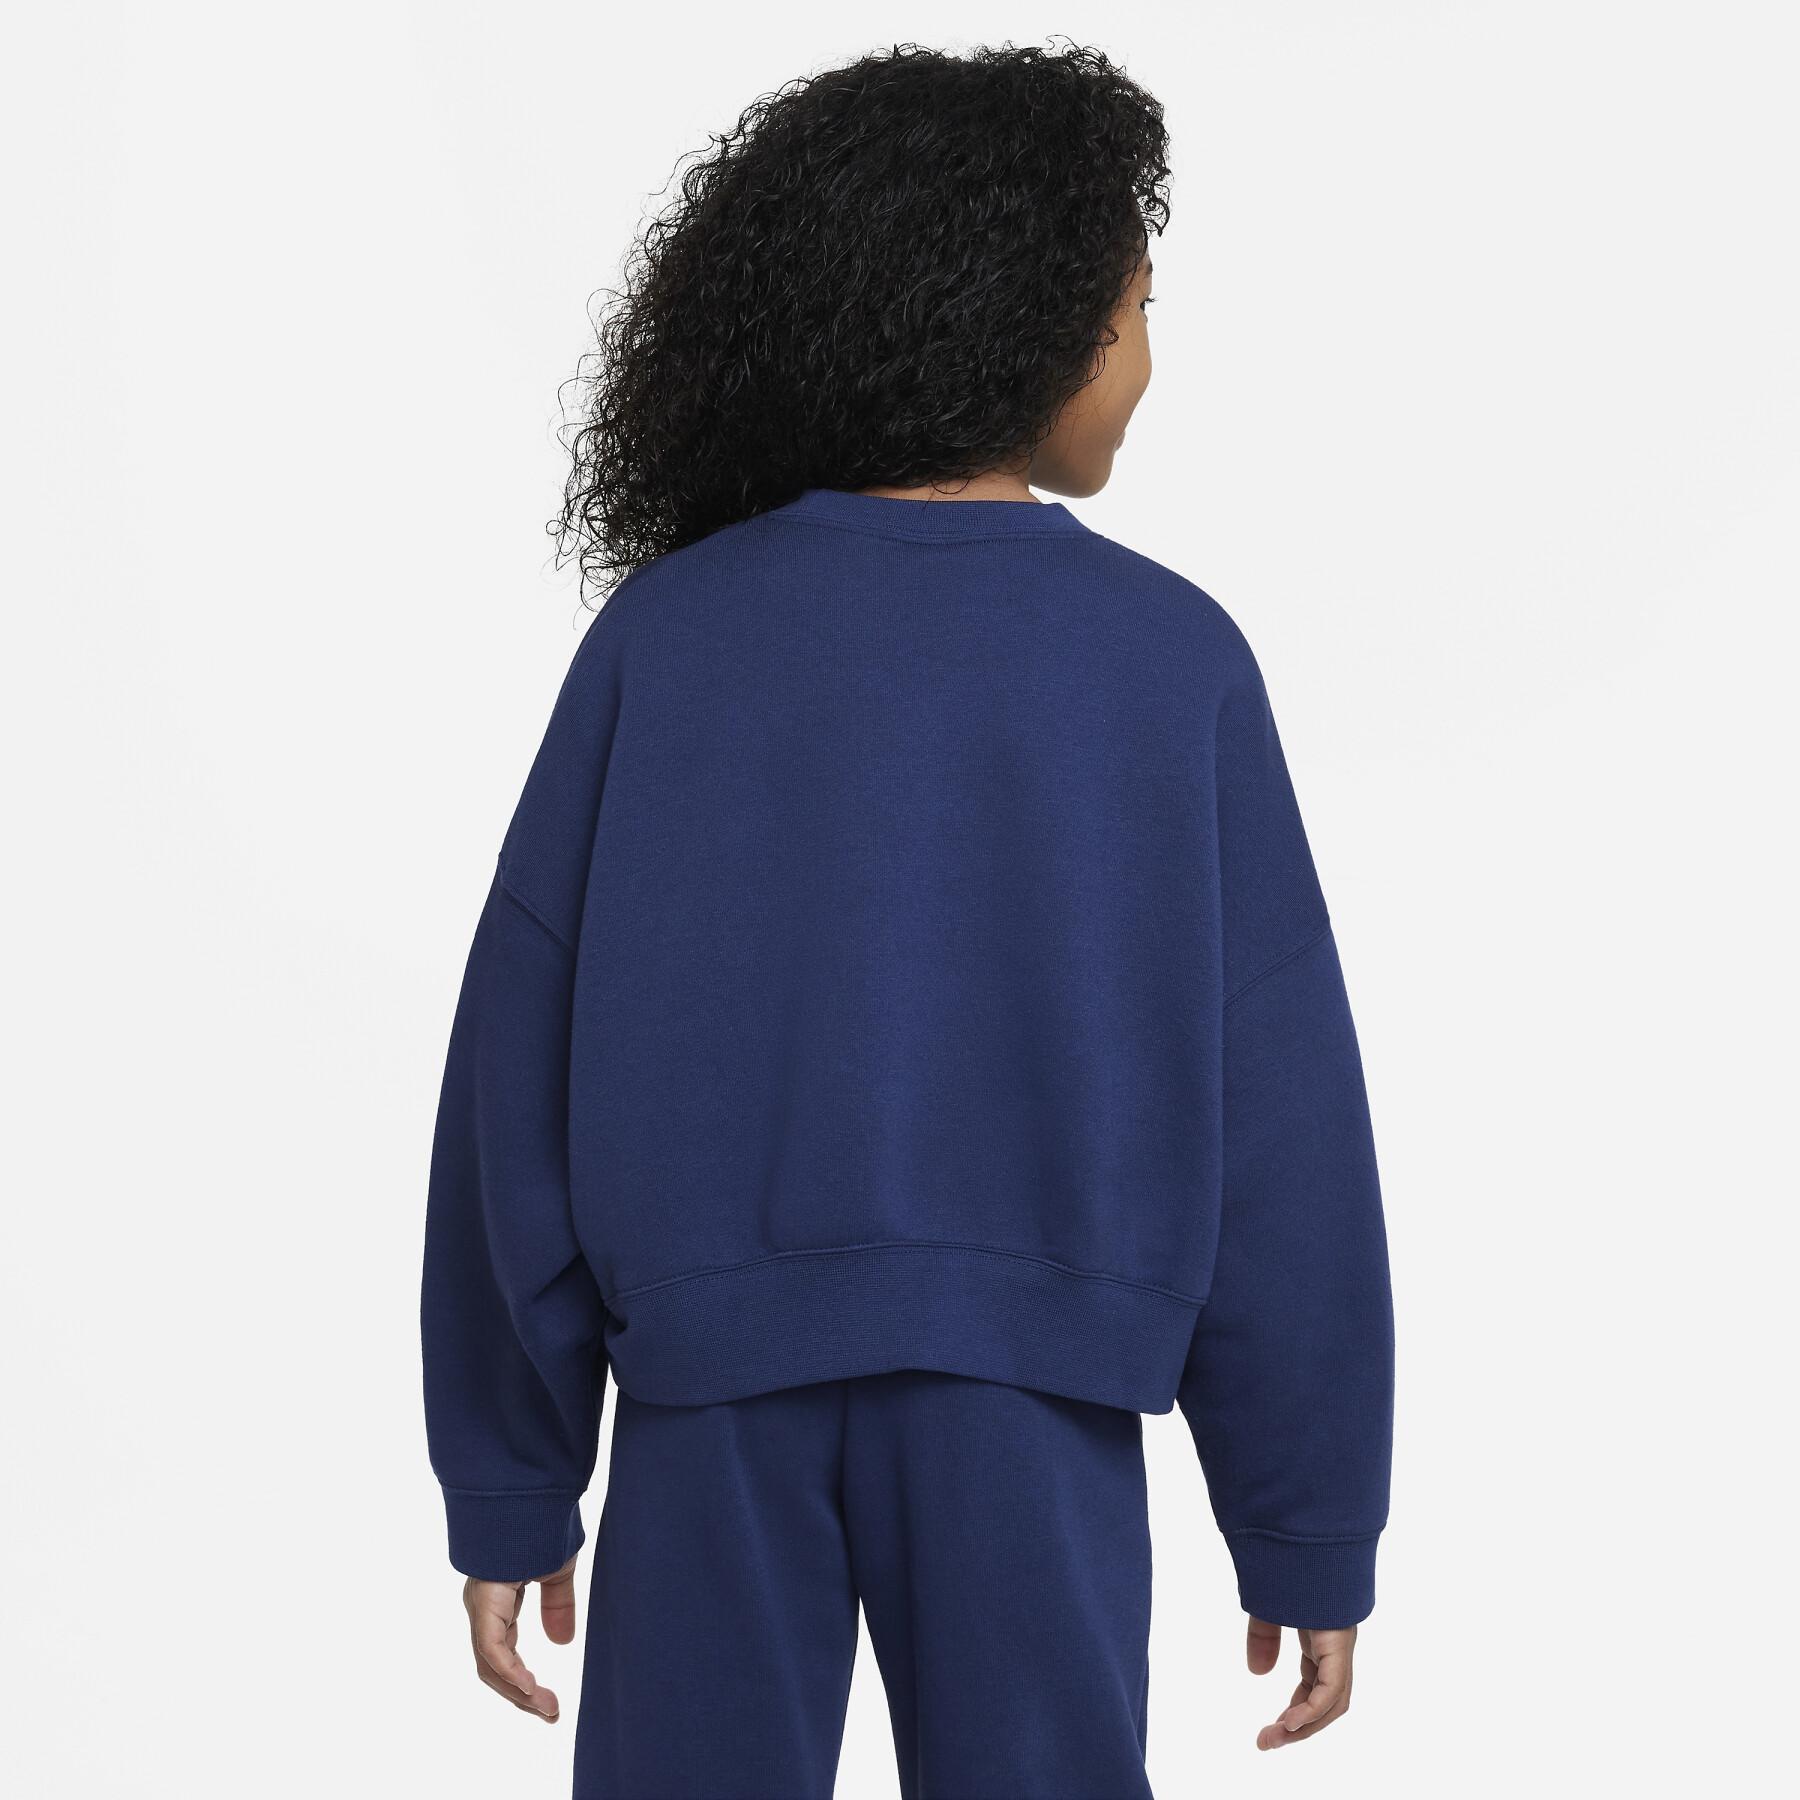 Sweatshirt round neck girl Nike Trend fleece Print